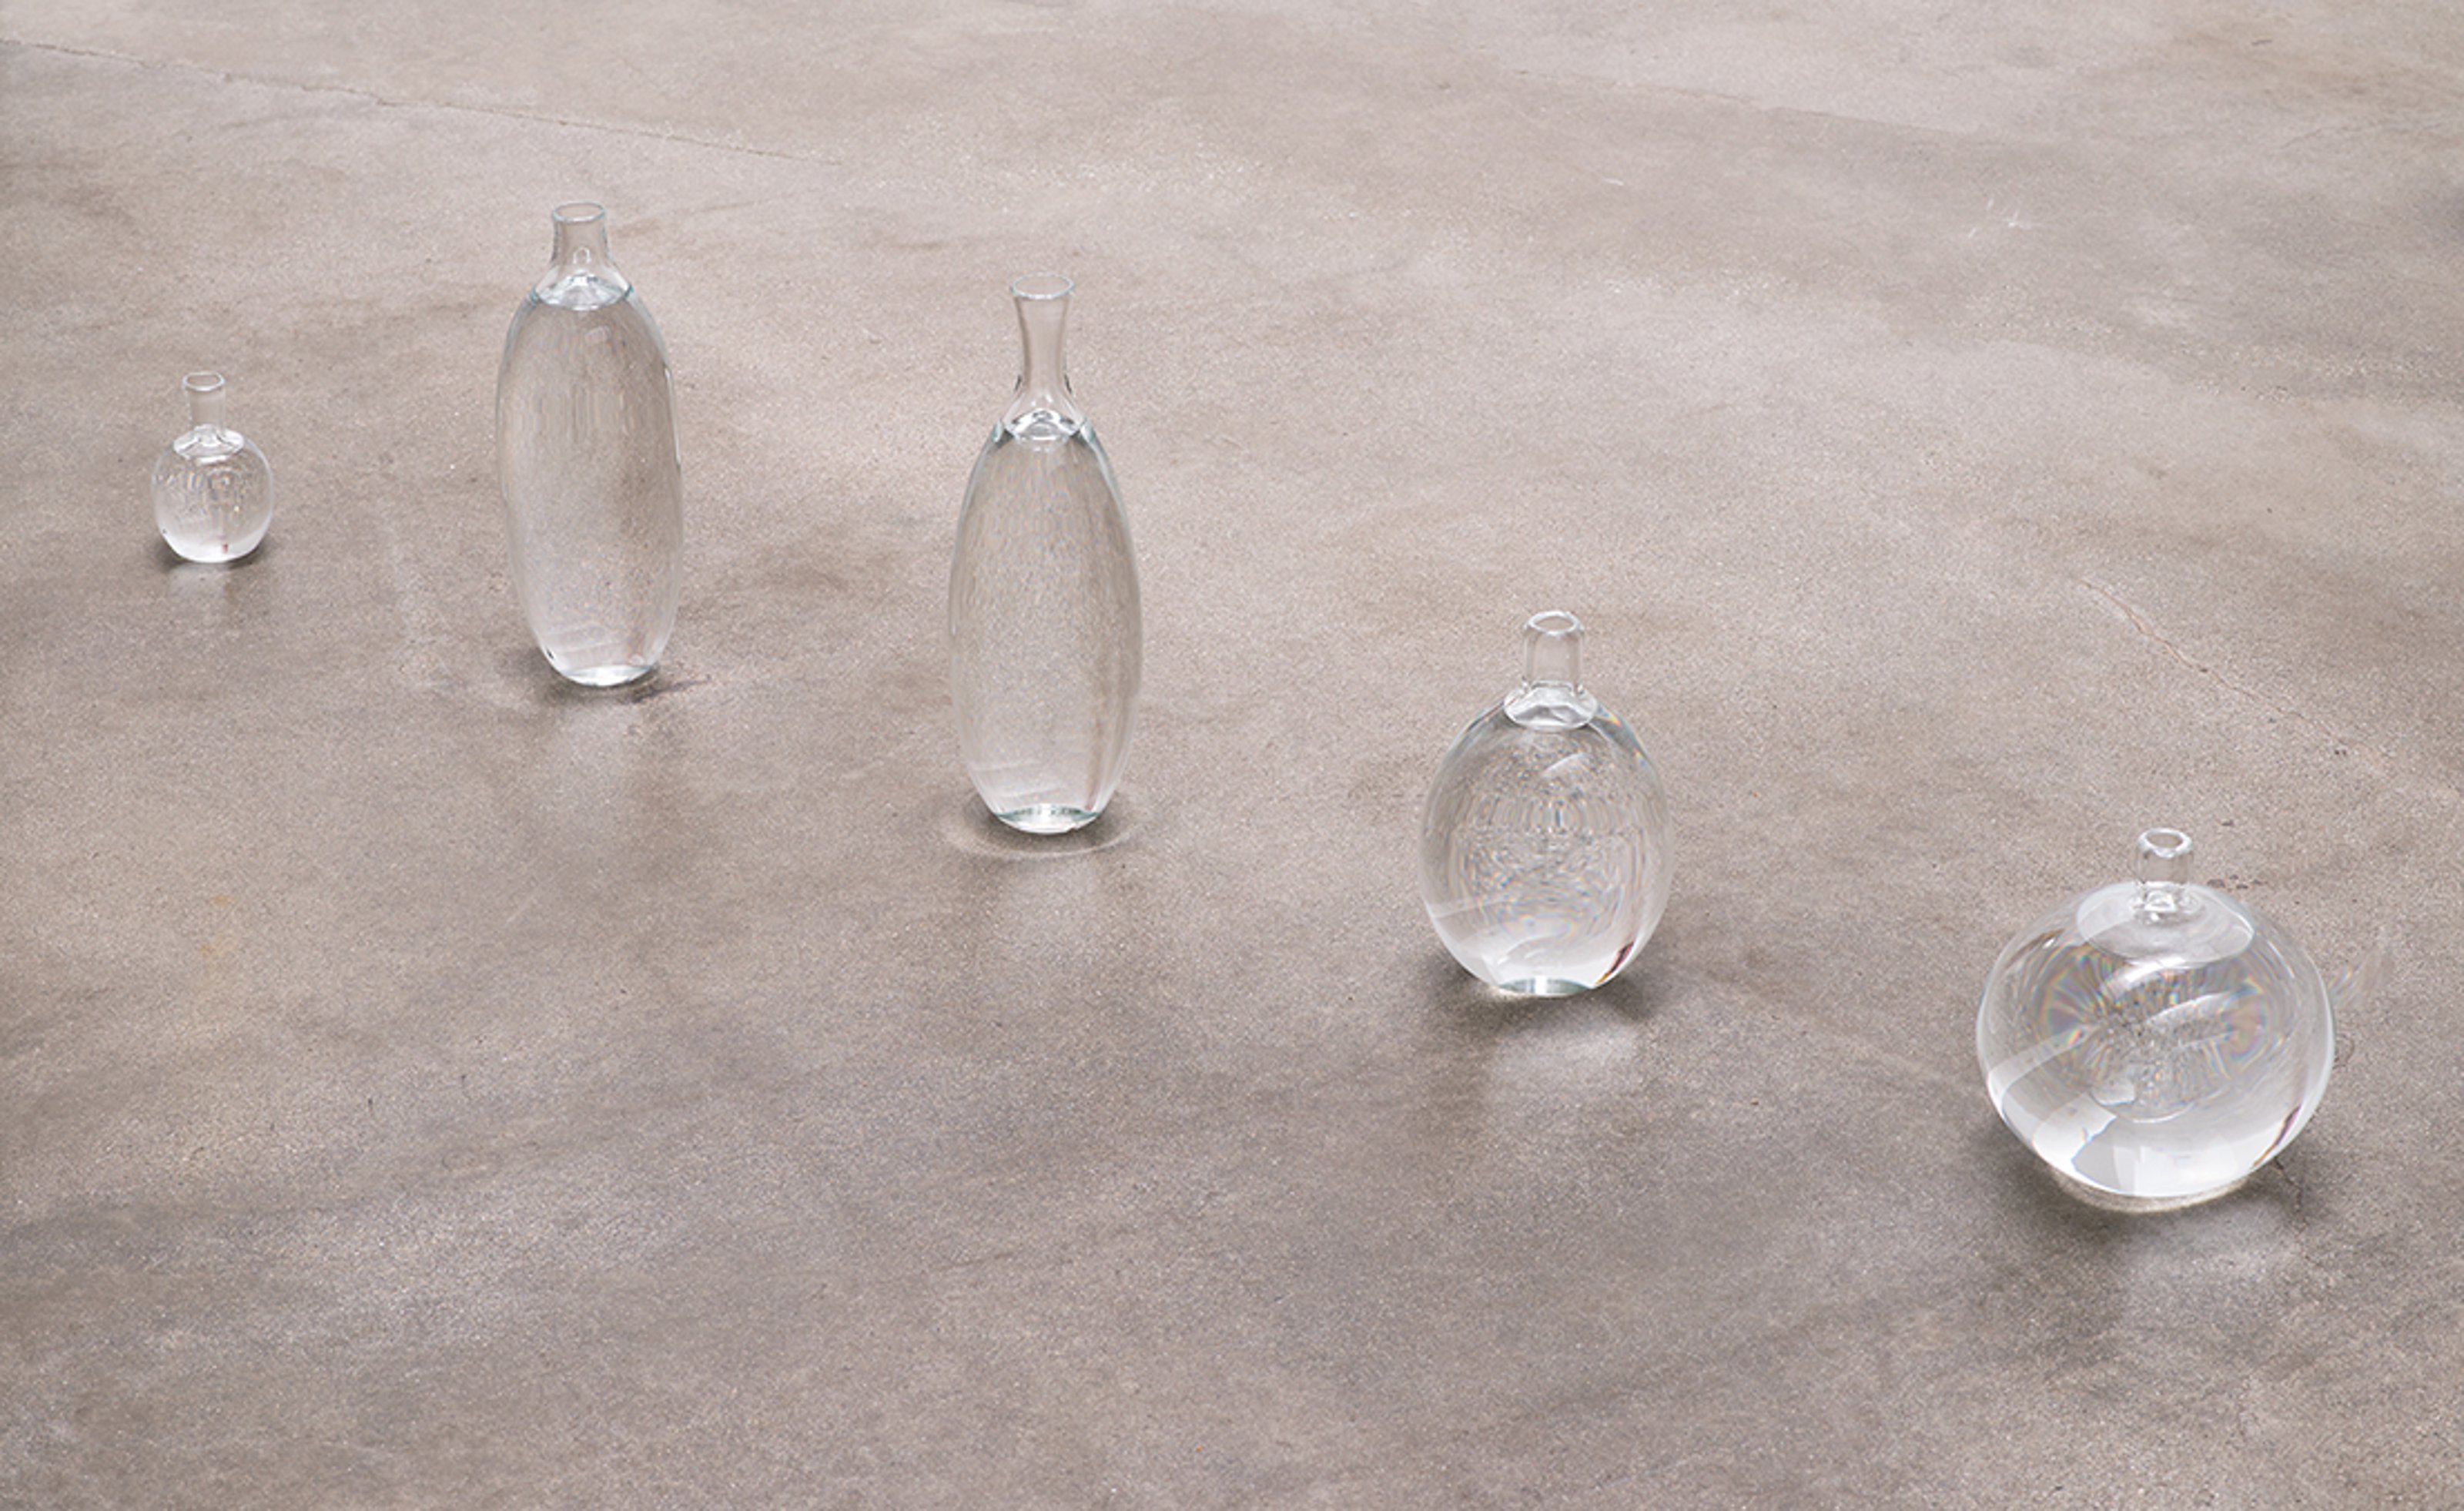 Botellas de vidrio llenas de agua de varios tamaños instaladas en una línea en el suelo